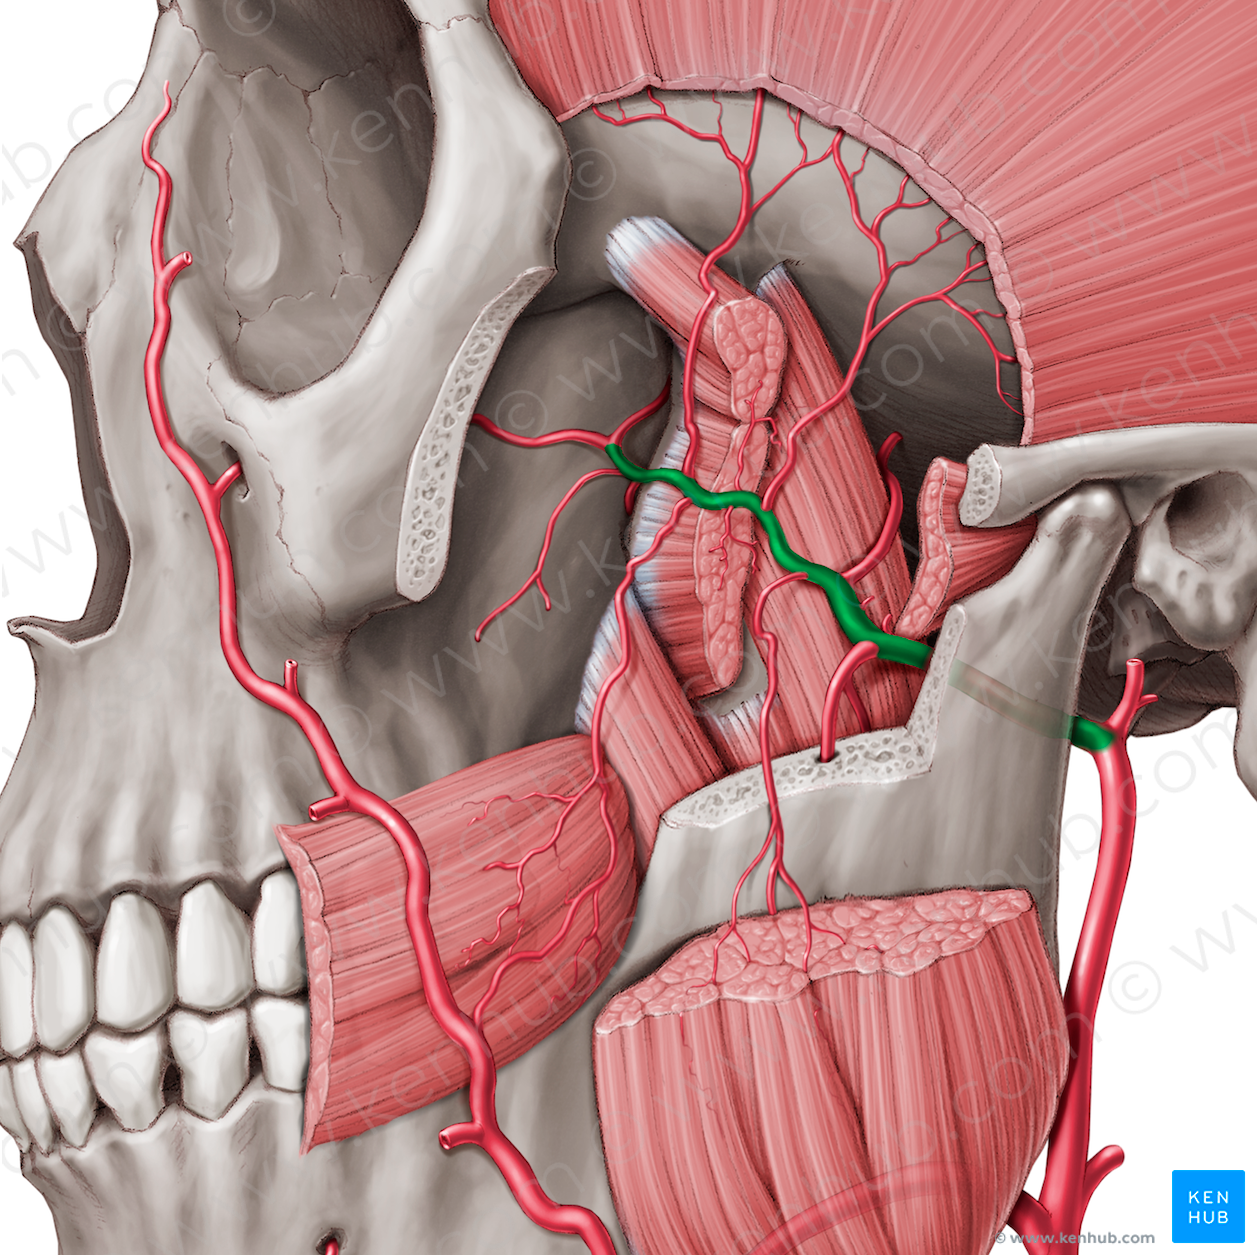 Maxillary artery (#1502)